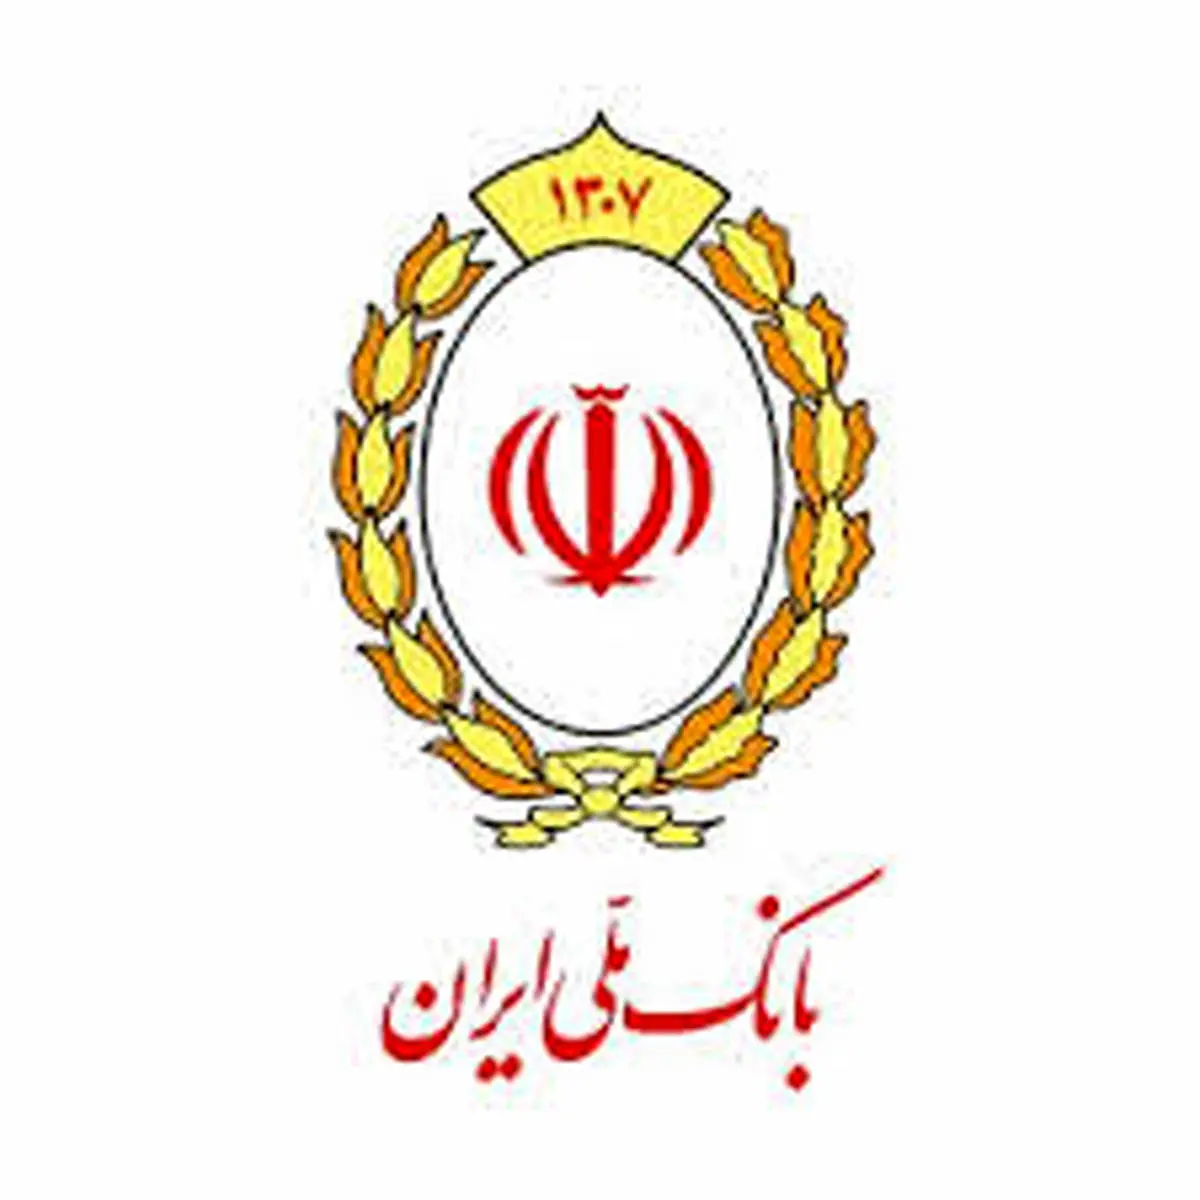 پرداخت اقساط تسهیلات بانک ملی ایران بدون انتقال کرونا

